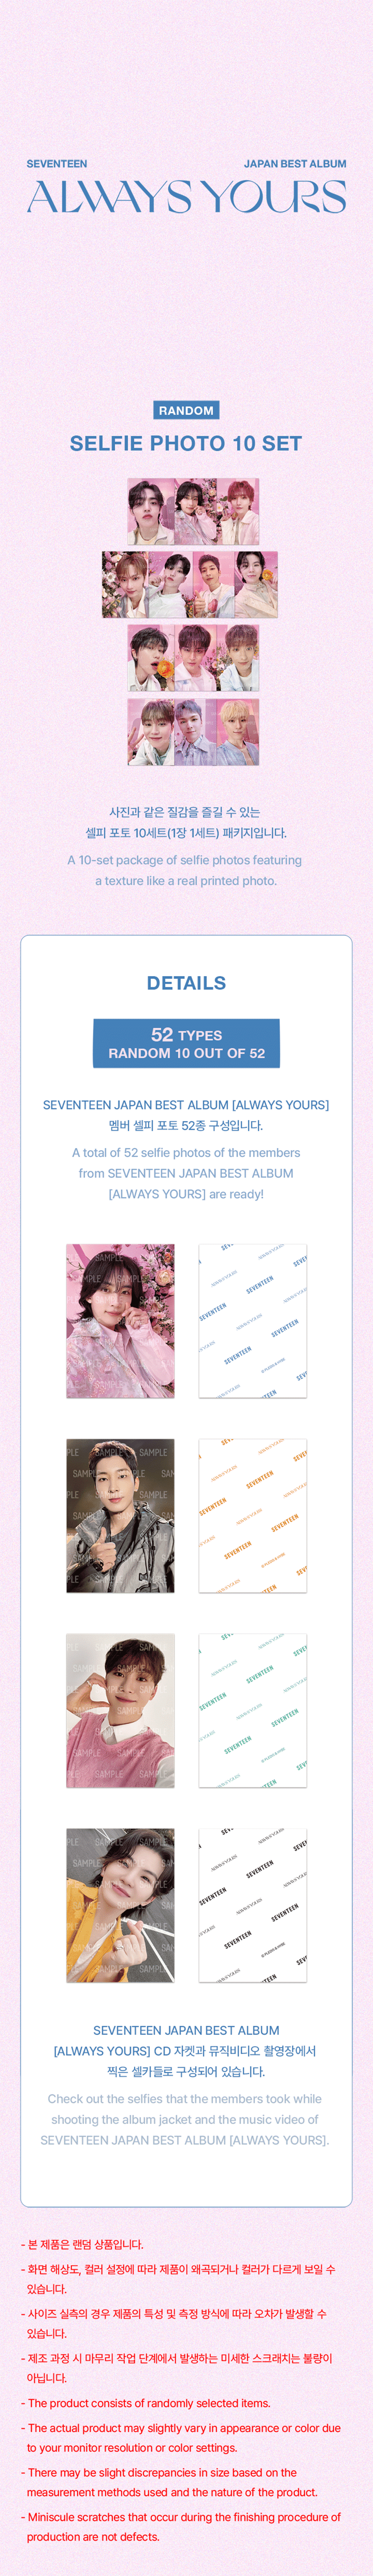 seventeen-japan-best-album-always-yours-random-selfie-photo-10-set-wholesales